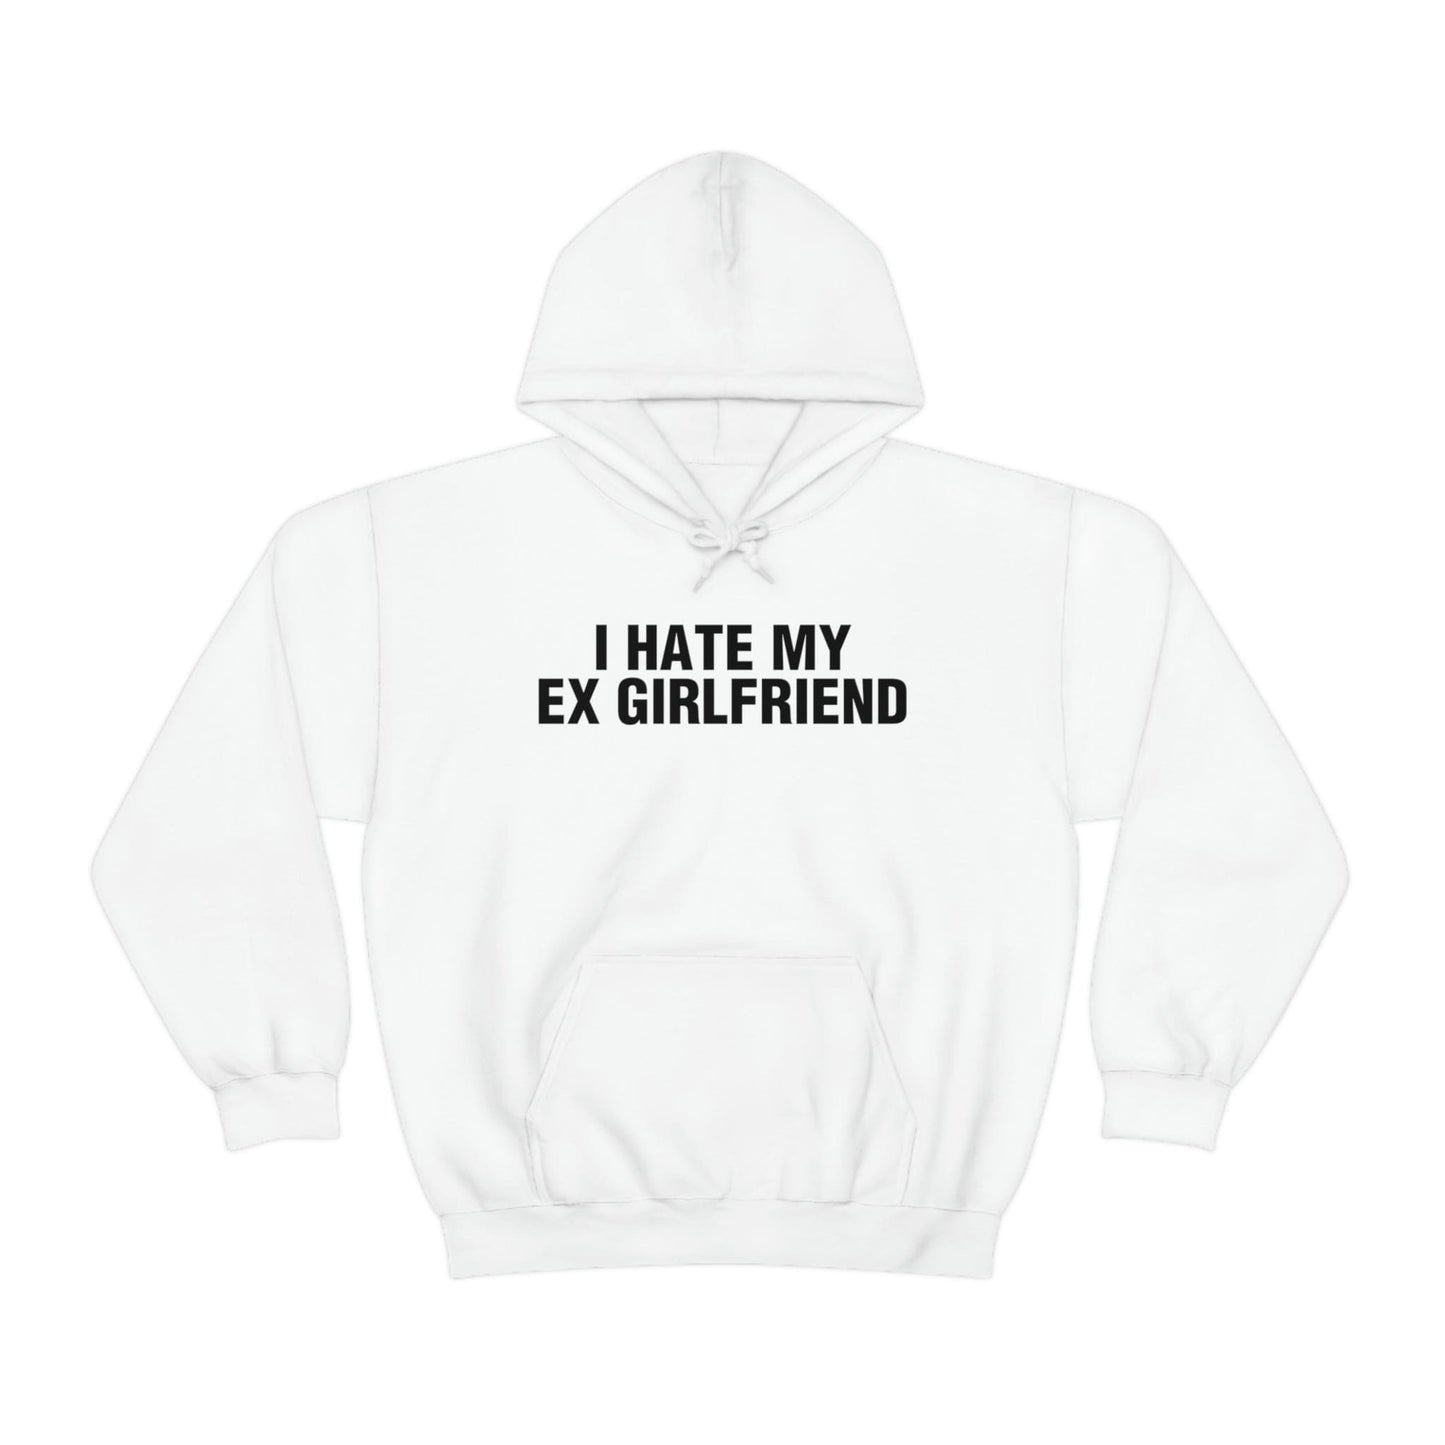 I HATE MY EX GIRLFRIEND (hoodie)